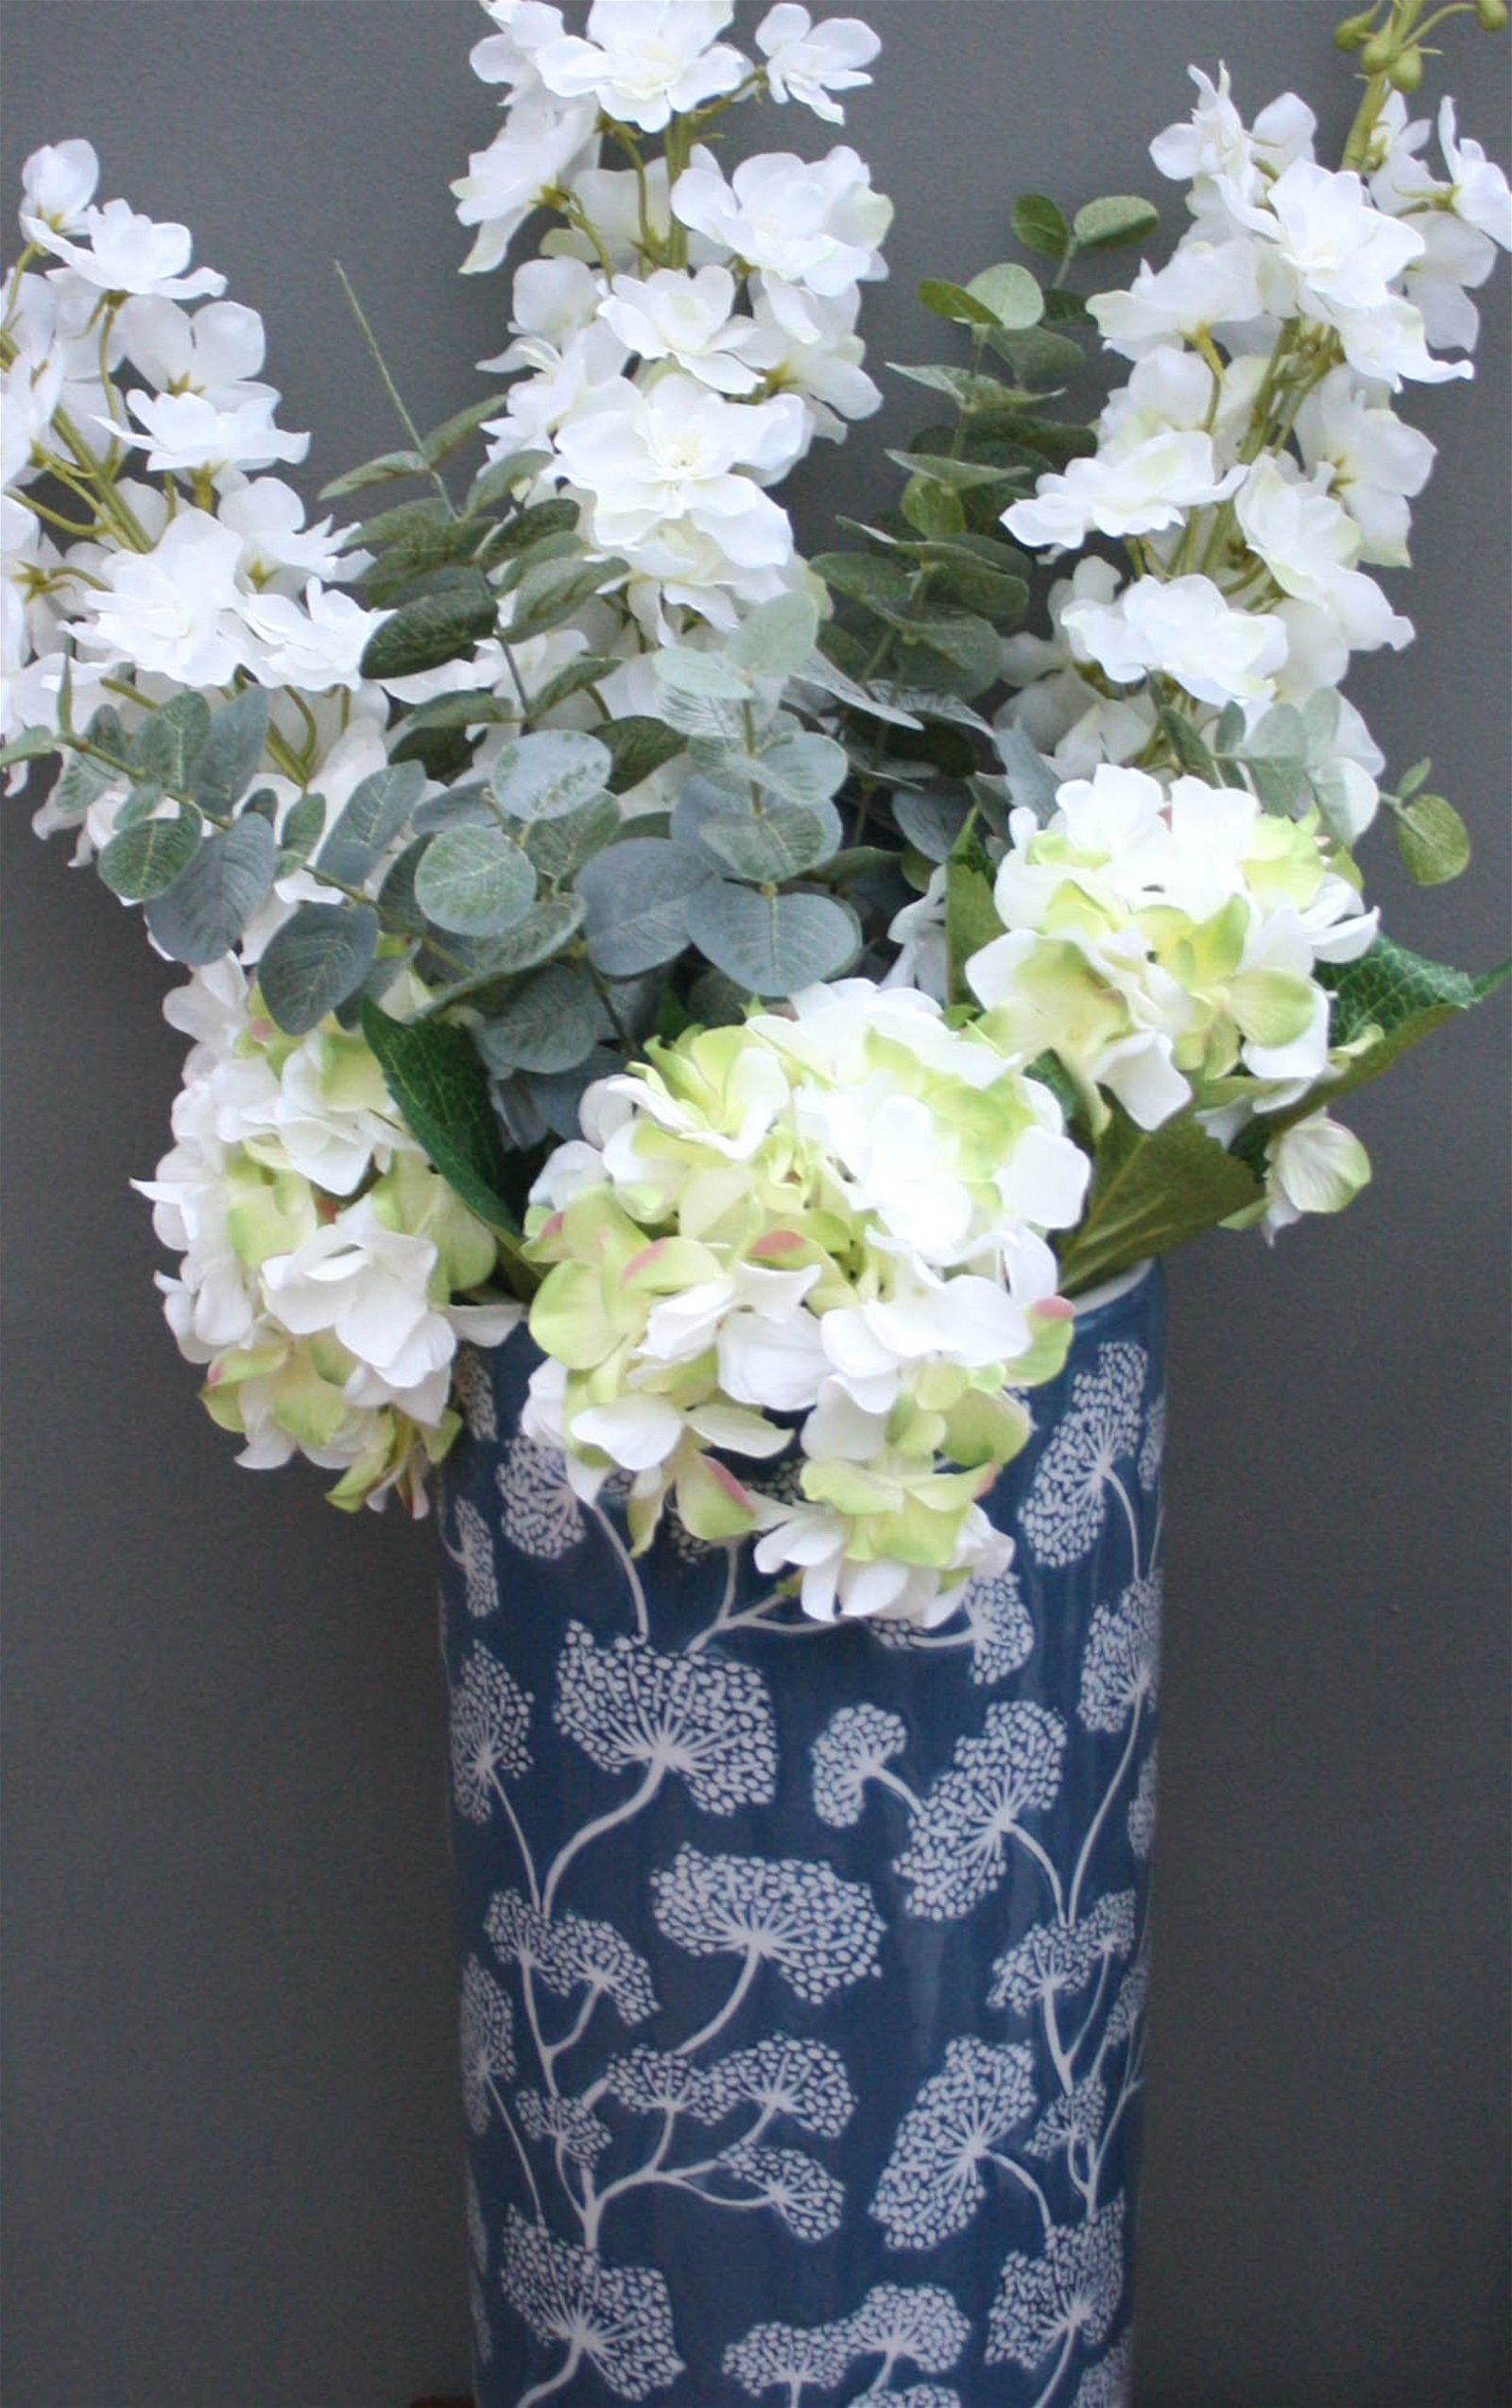 Ceramic Embossed Umbrella Stand, Blue/White Floral Design